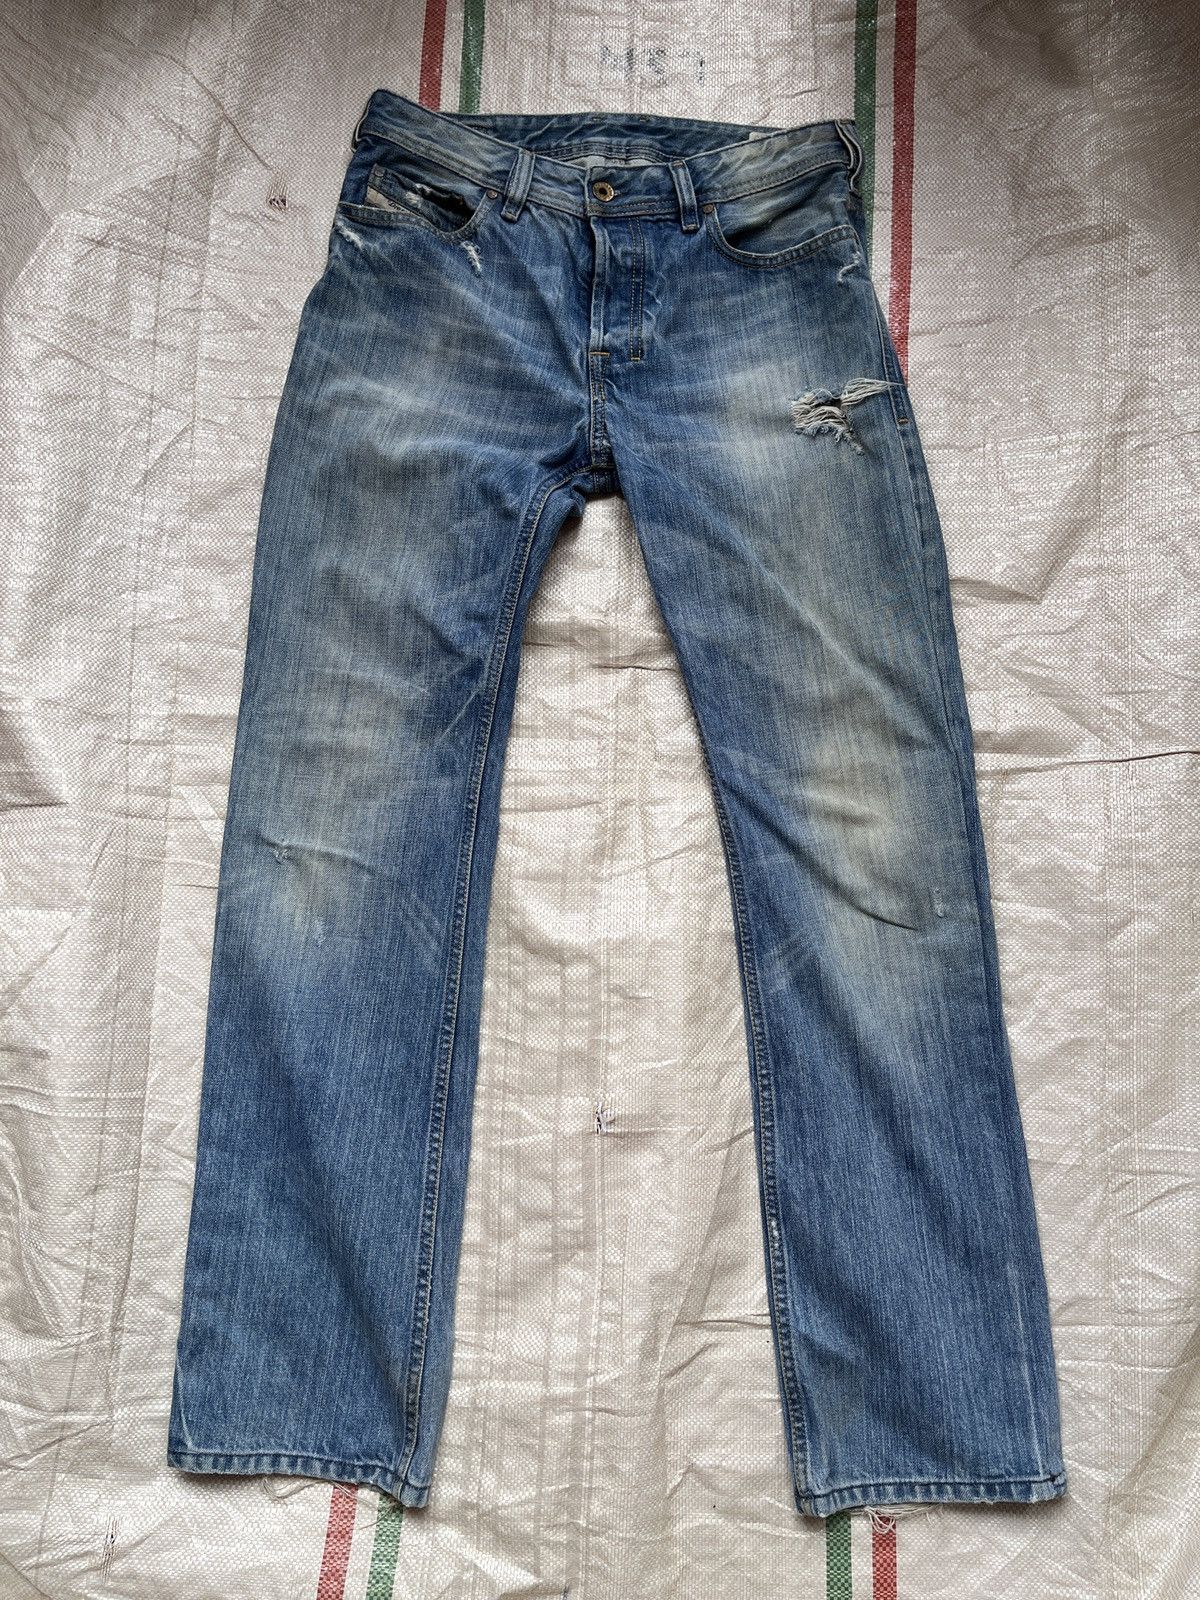 Distressed Diesel Black Zatiny Denim Jeans Made In Italy - 22